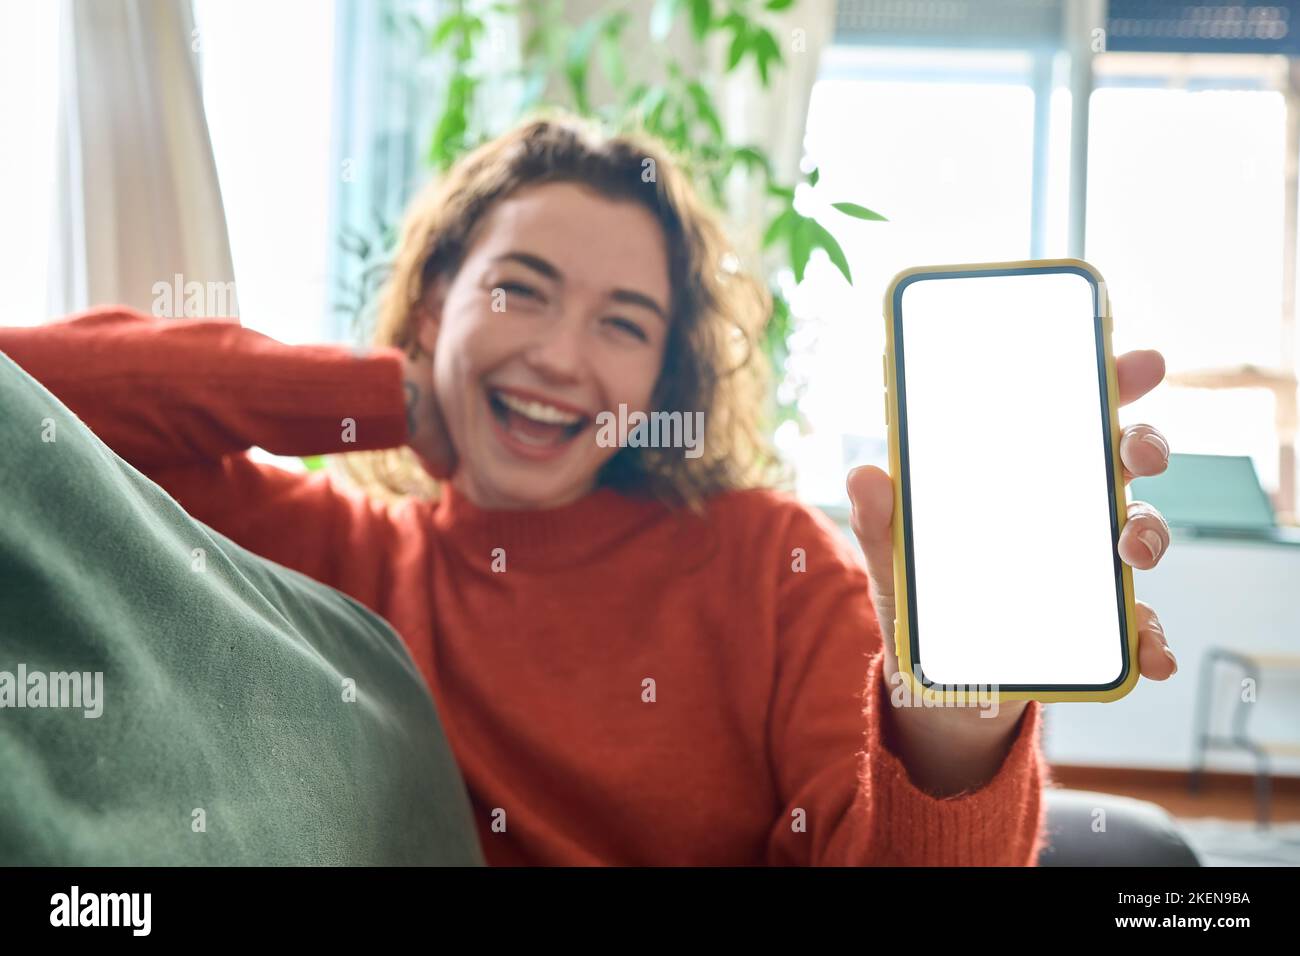 Glückliche junge Frau, die das Mobiltelefon in der Hand hält und den Bildschirm des Handymockup zeigt. Stockfoto